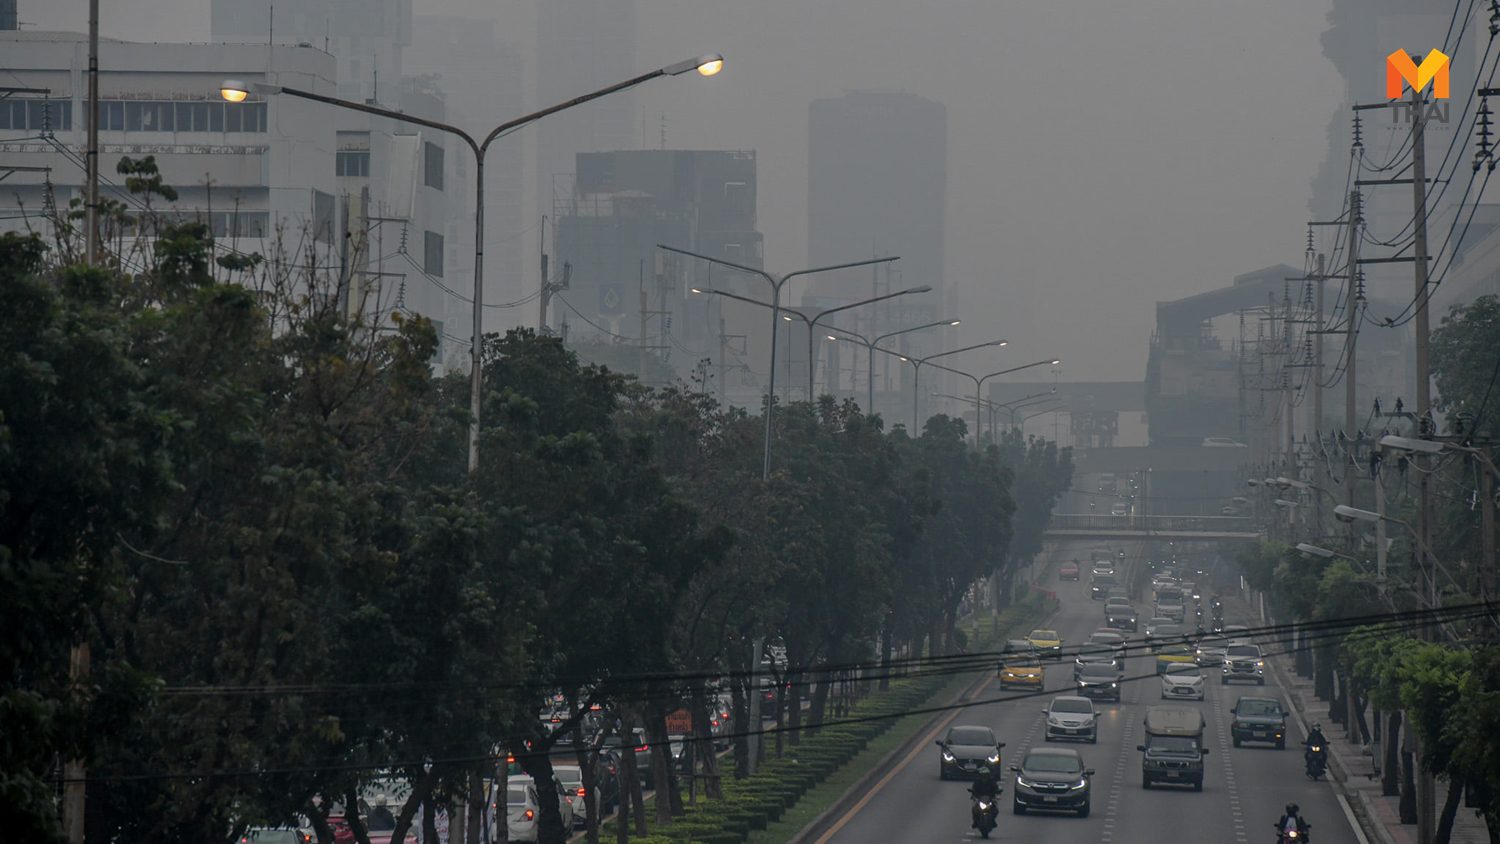 “Krung Thep Maha Nakhon“ ฝุ่น PM2.5 เกินค่ามาตรฐาน 45 พื้นที่